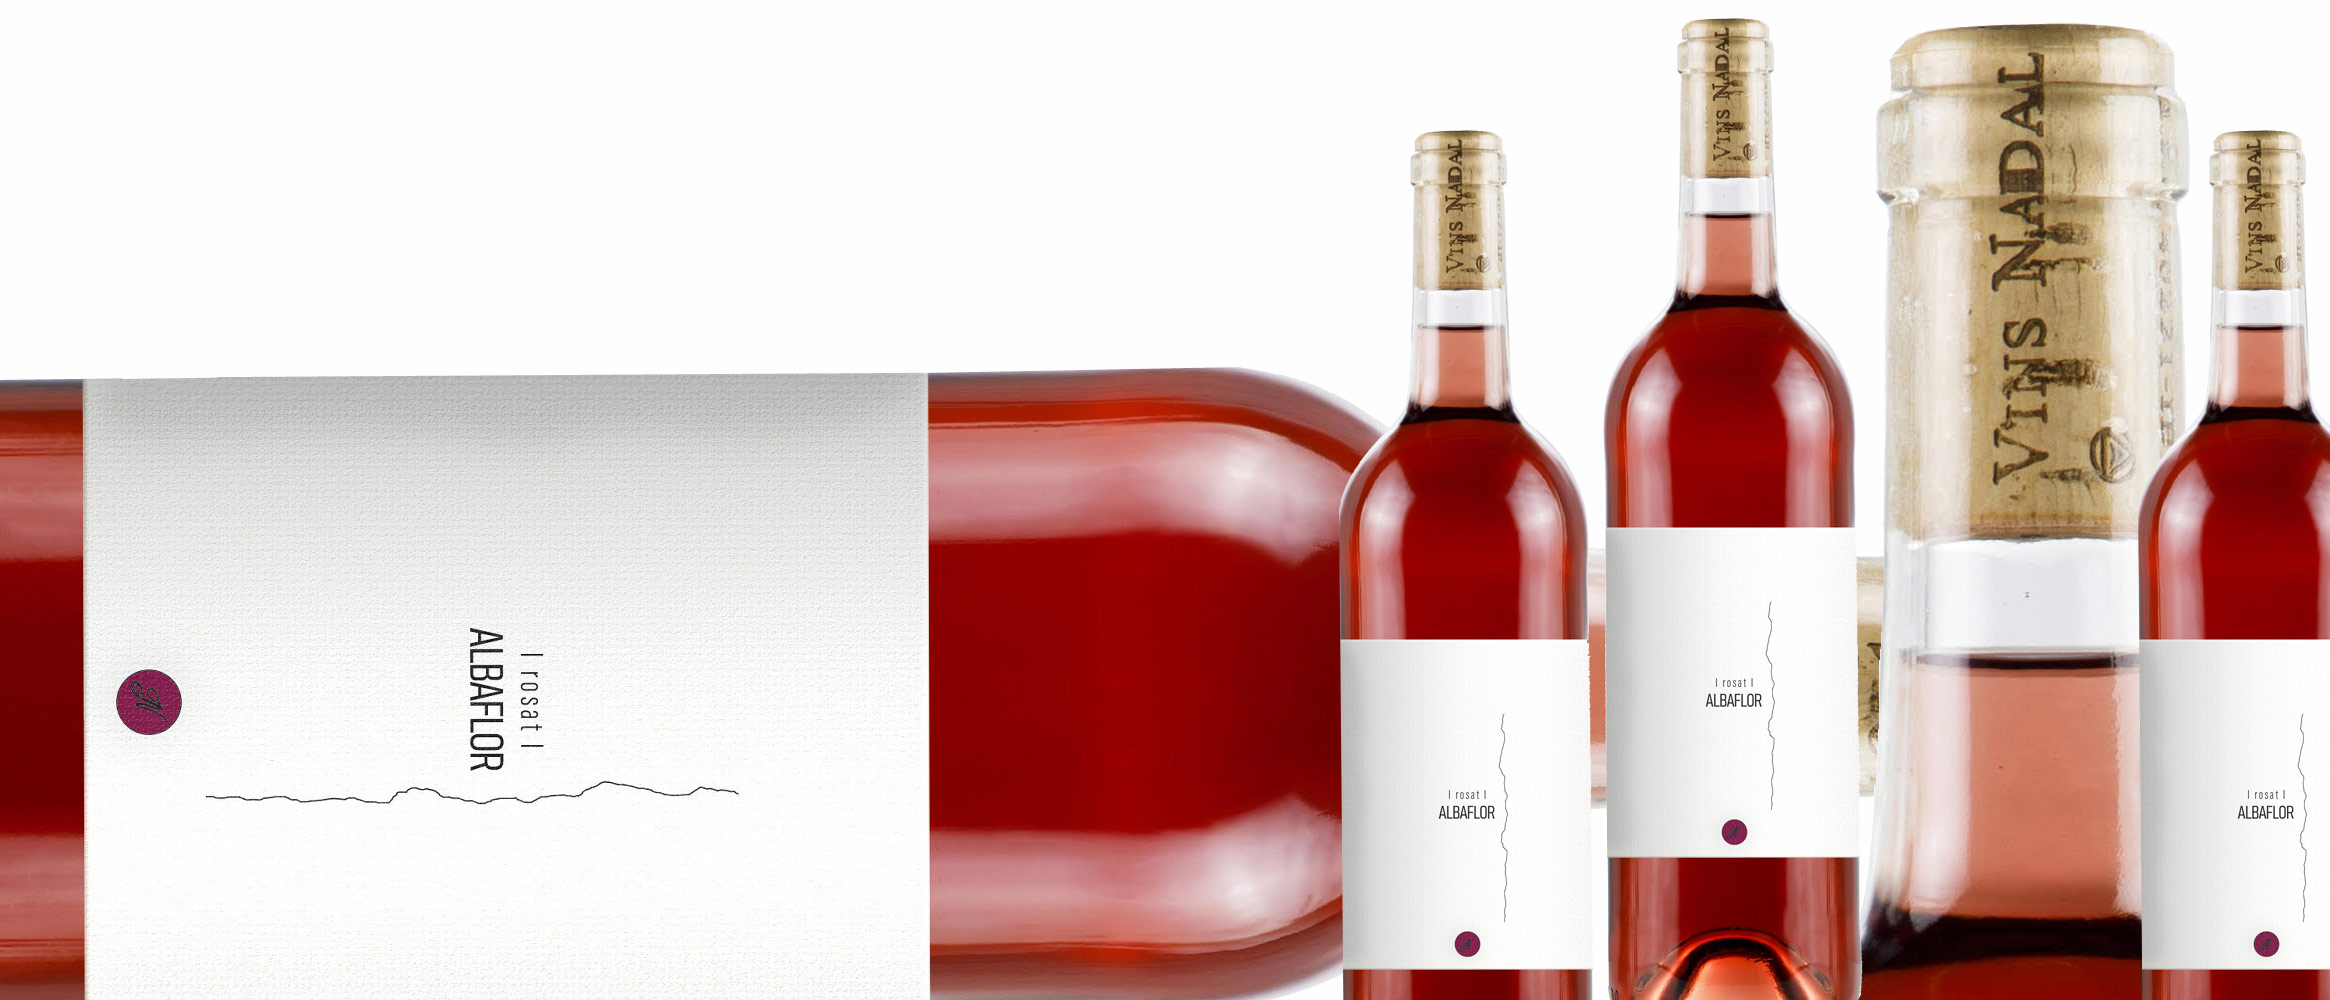 6 x Nadal Albaflor vin rosé D.O. Binissalem